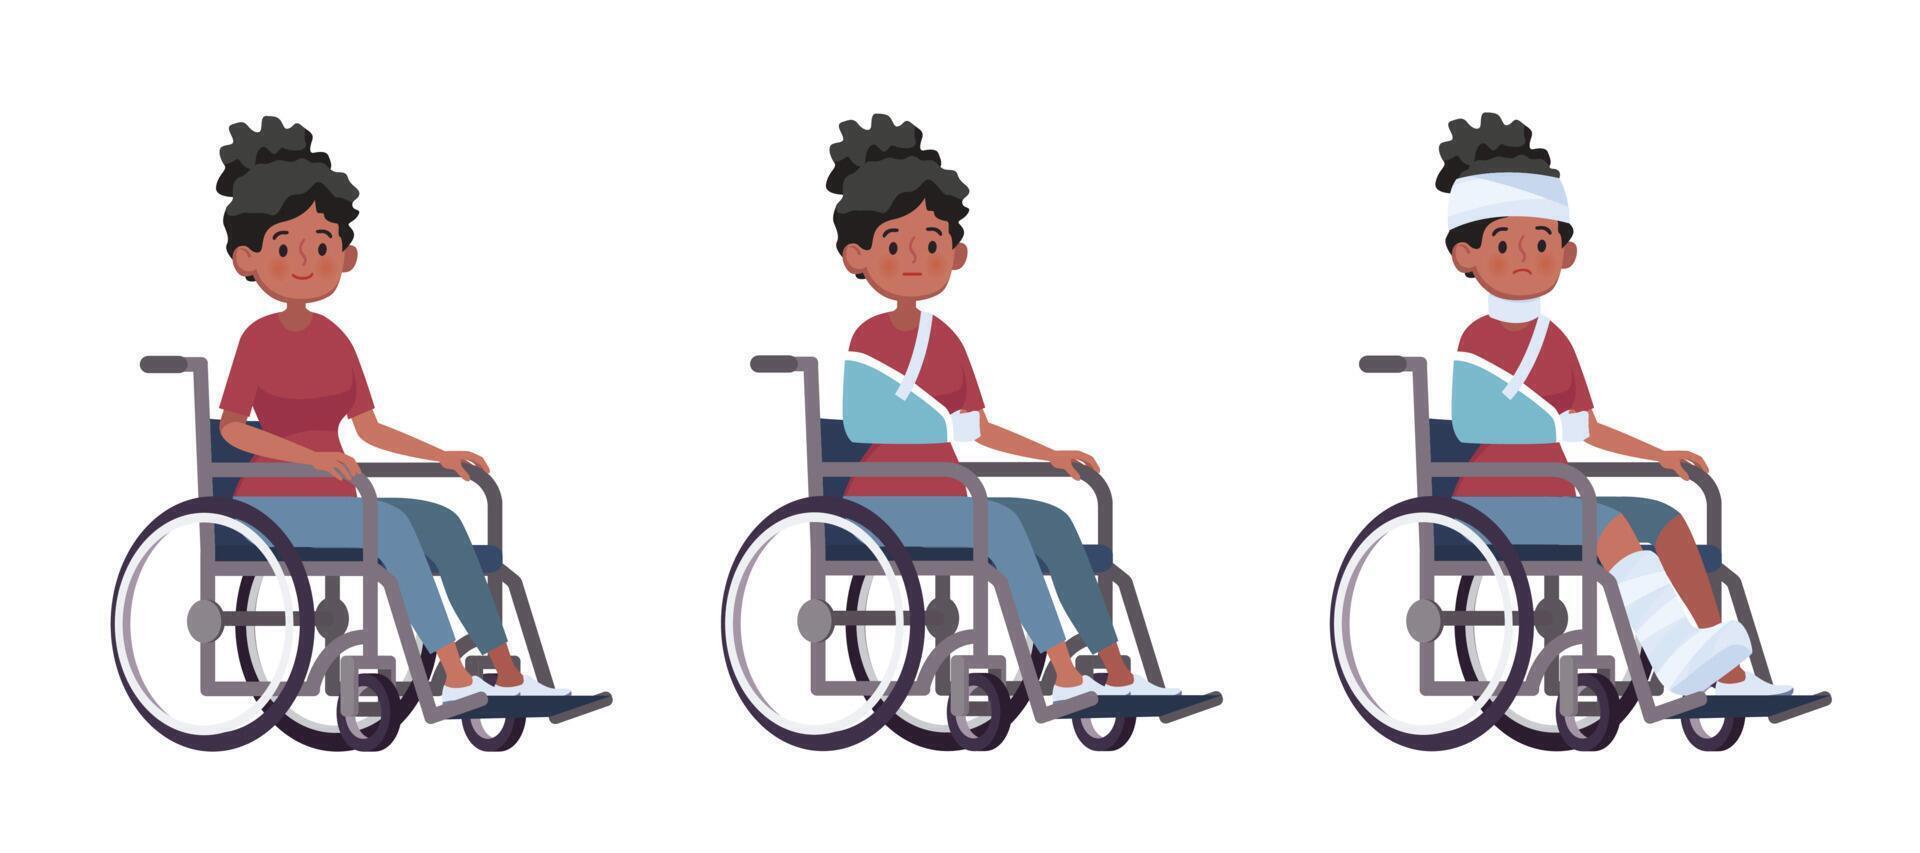 giovane donna su una sedia a rotelle set di cartoni animati vettoriali concetto di recupero di lesioni e disabilità dall'incidente